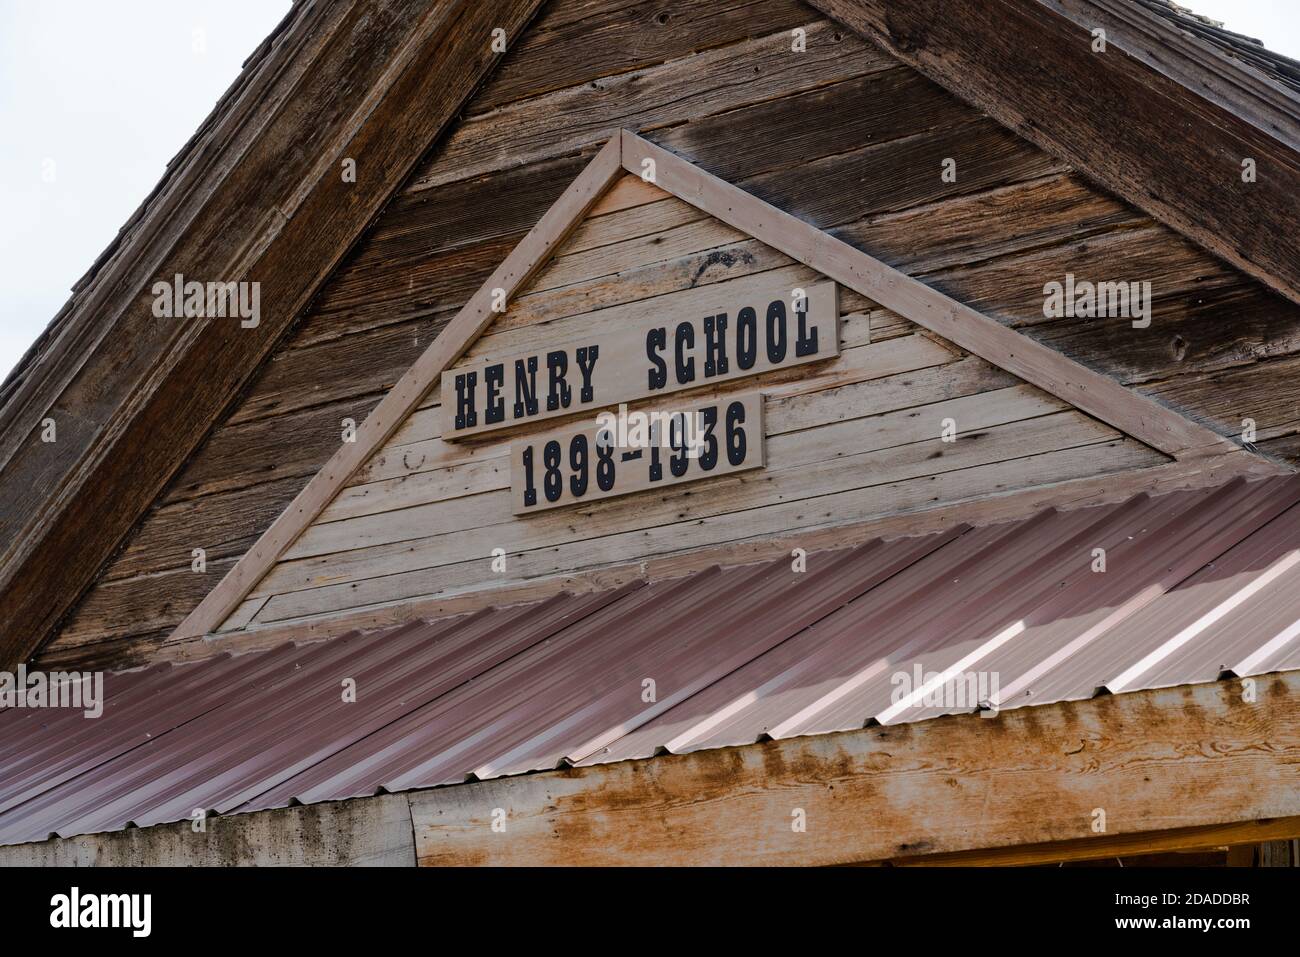 Esta antigua escuela fue construida en 1898 en Henry, Idaho y fue usada hasta 1936. Después de caerse derelict, fue trasladado al rancho Stoor en Wayan A. Foto de stock